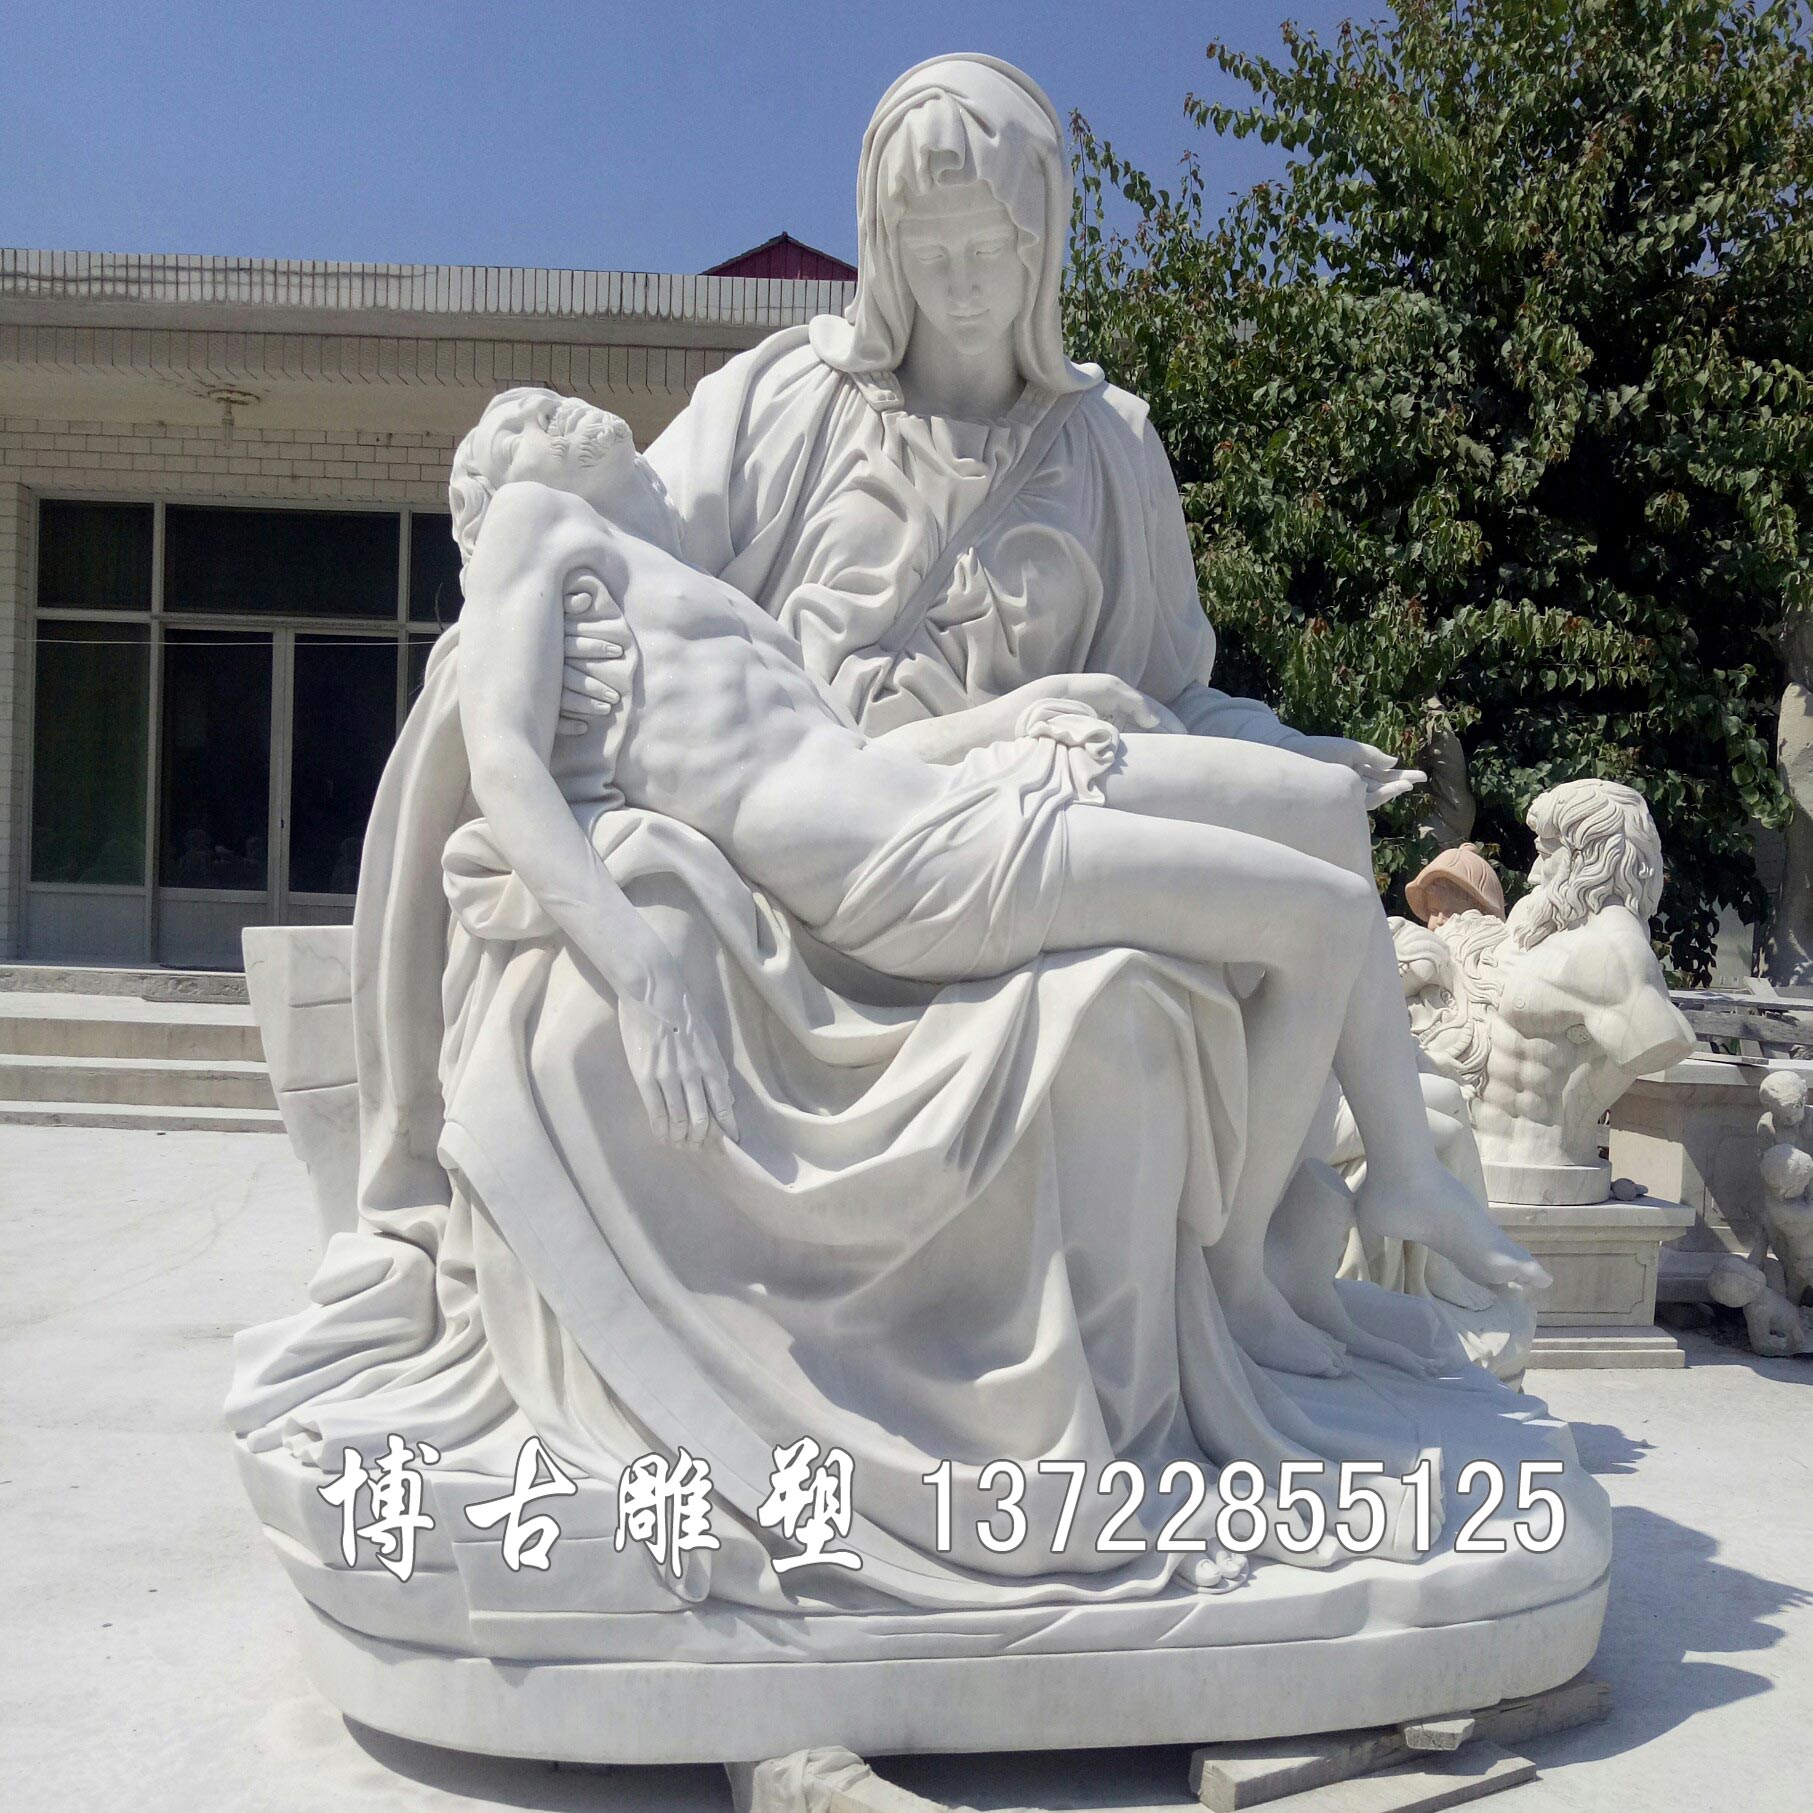 石雕人物  欧式人物雕像 广场公园人物雕塑